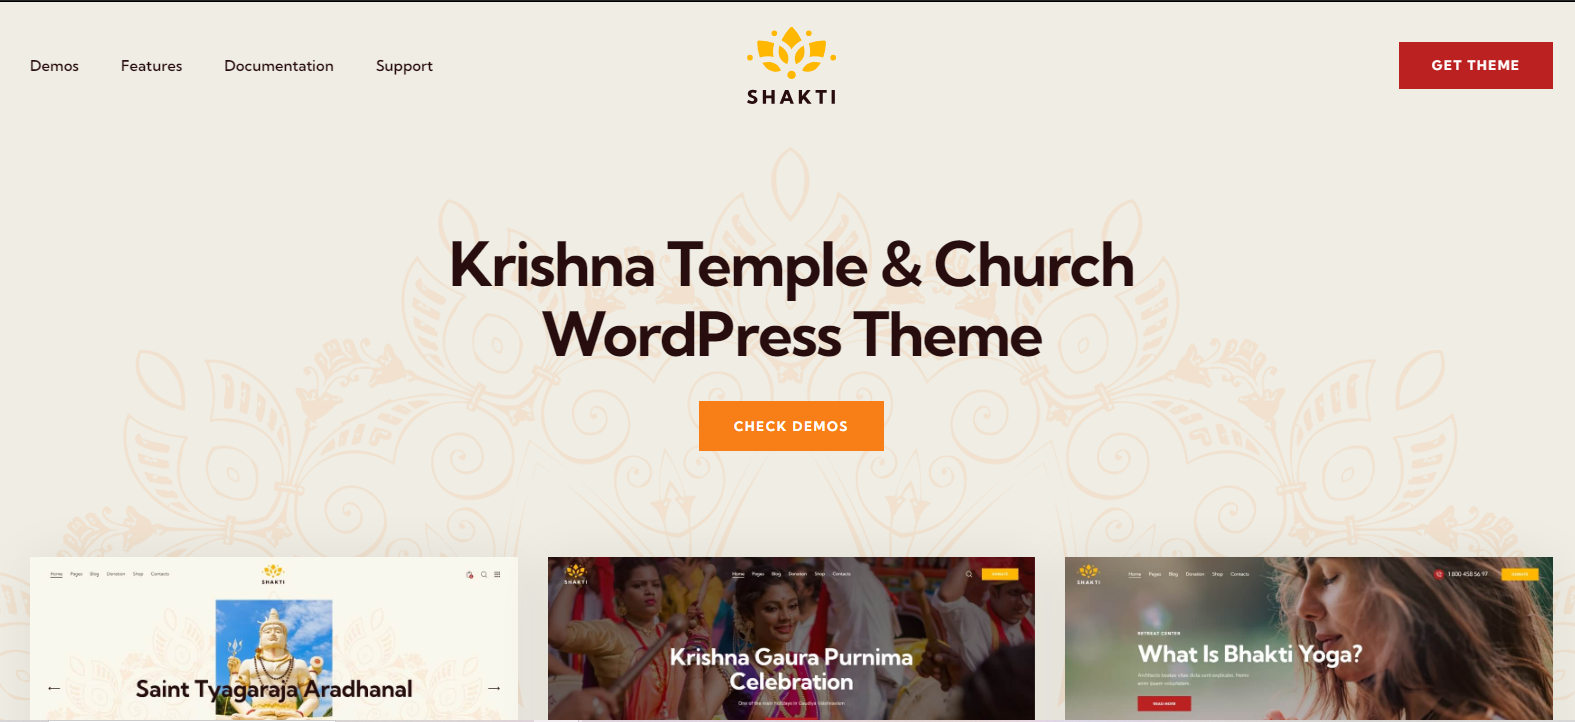 Shakti v1.0 - Krishna Temple & Church WordPress Theme